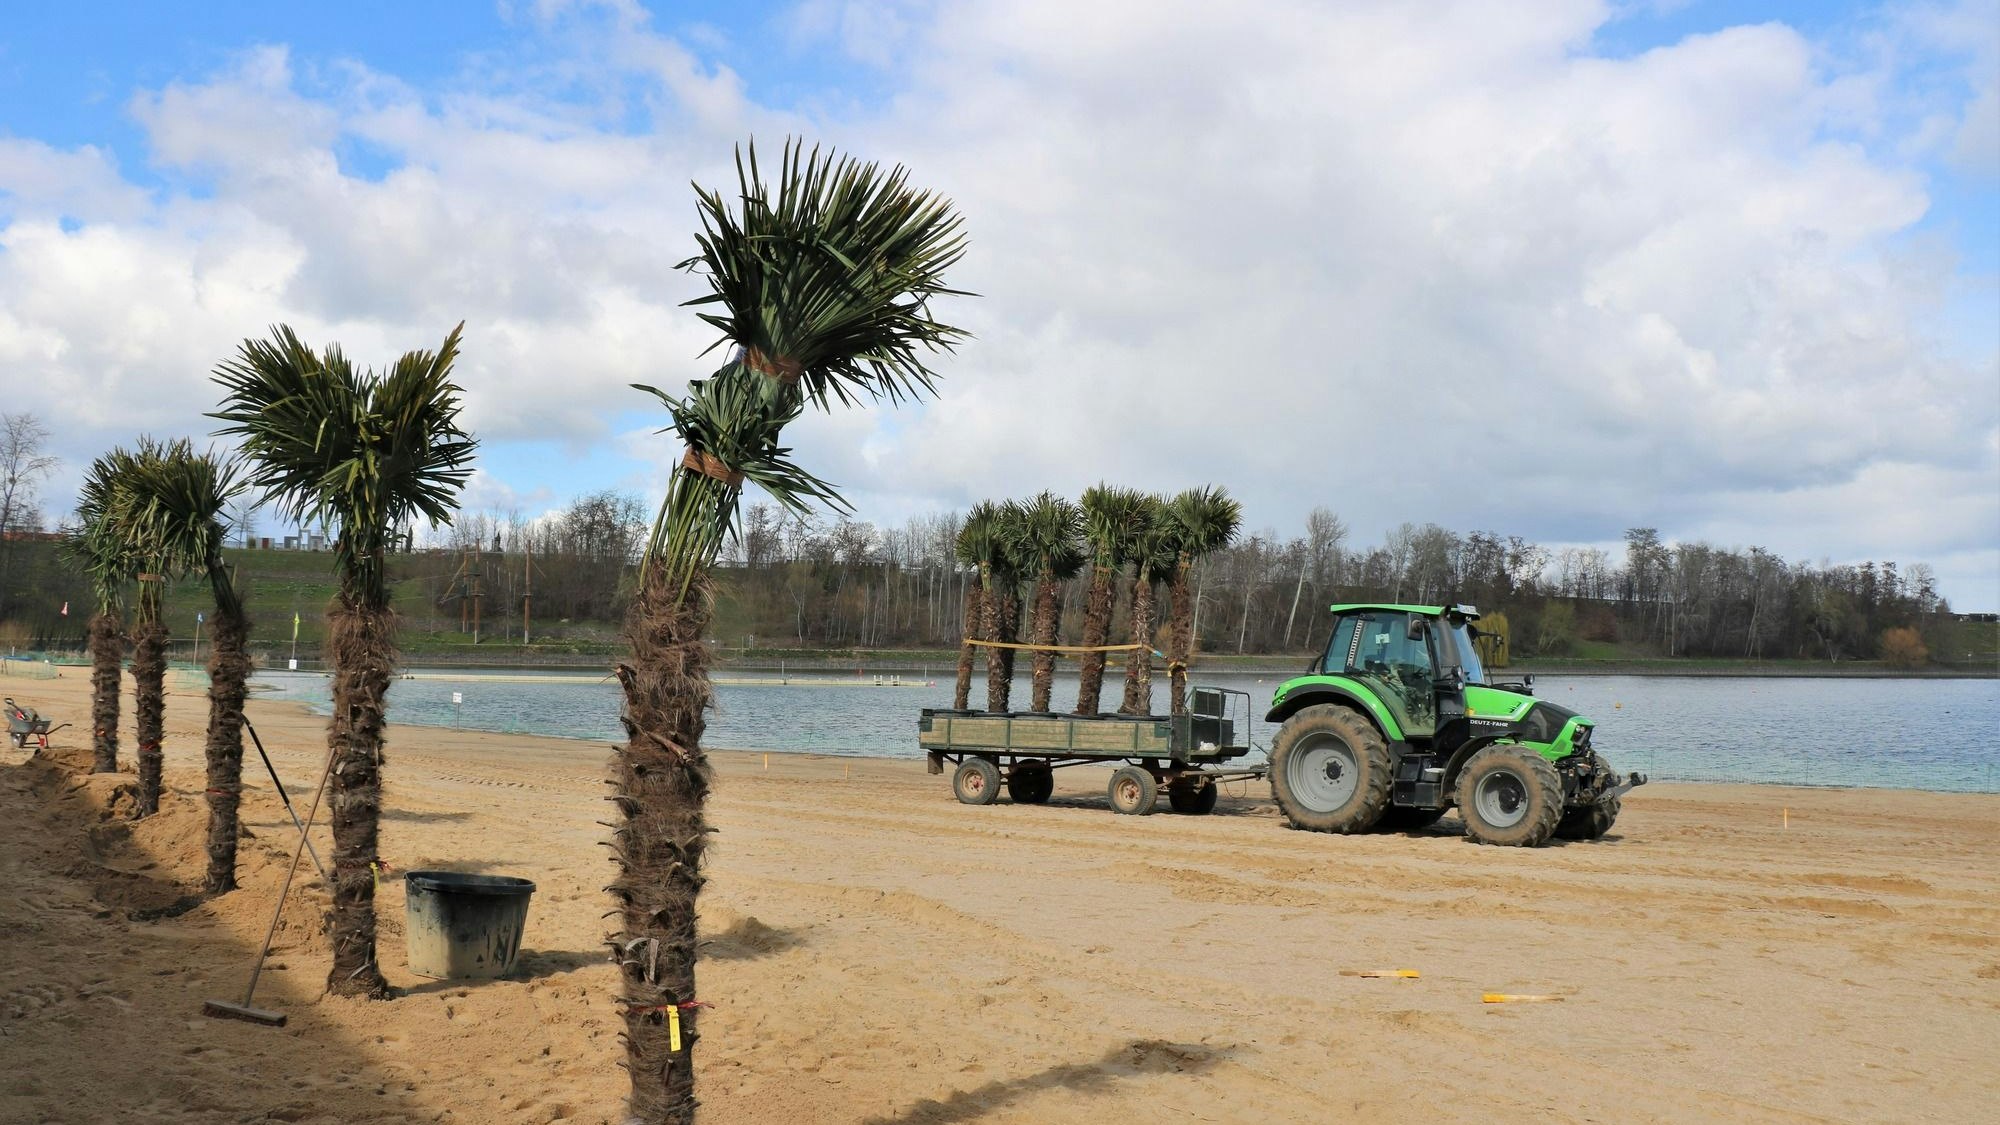 Eine Reihe von Palmen steht schon am sandigen Ufer des Zülpicher Sees. Ein Traktor mit einem Anhänger voller weiterer Palmen fährt vorbei.